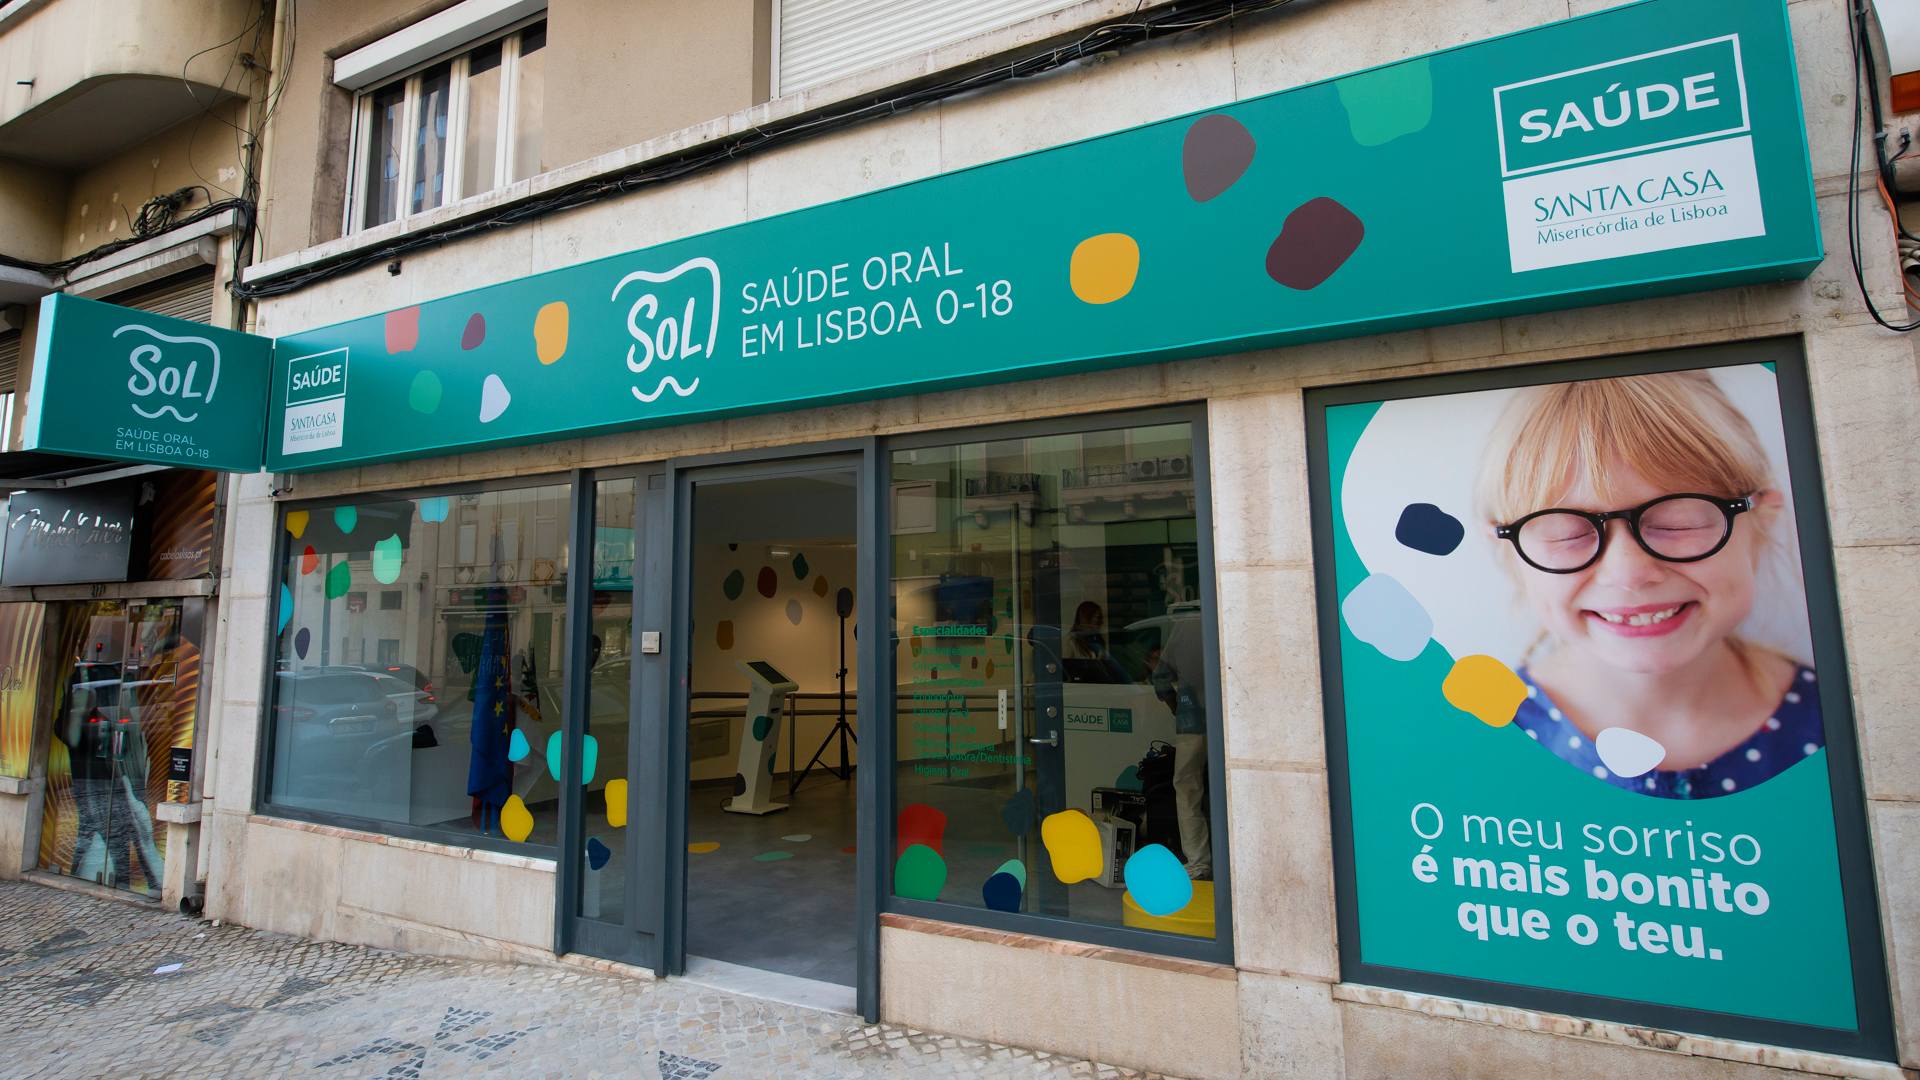 SOL – Saúde Oral em Lisboa. Há três anos a criar sorrisos